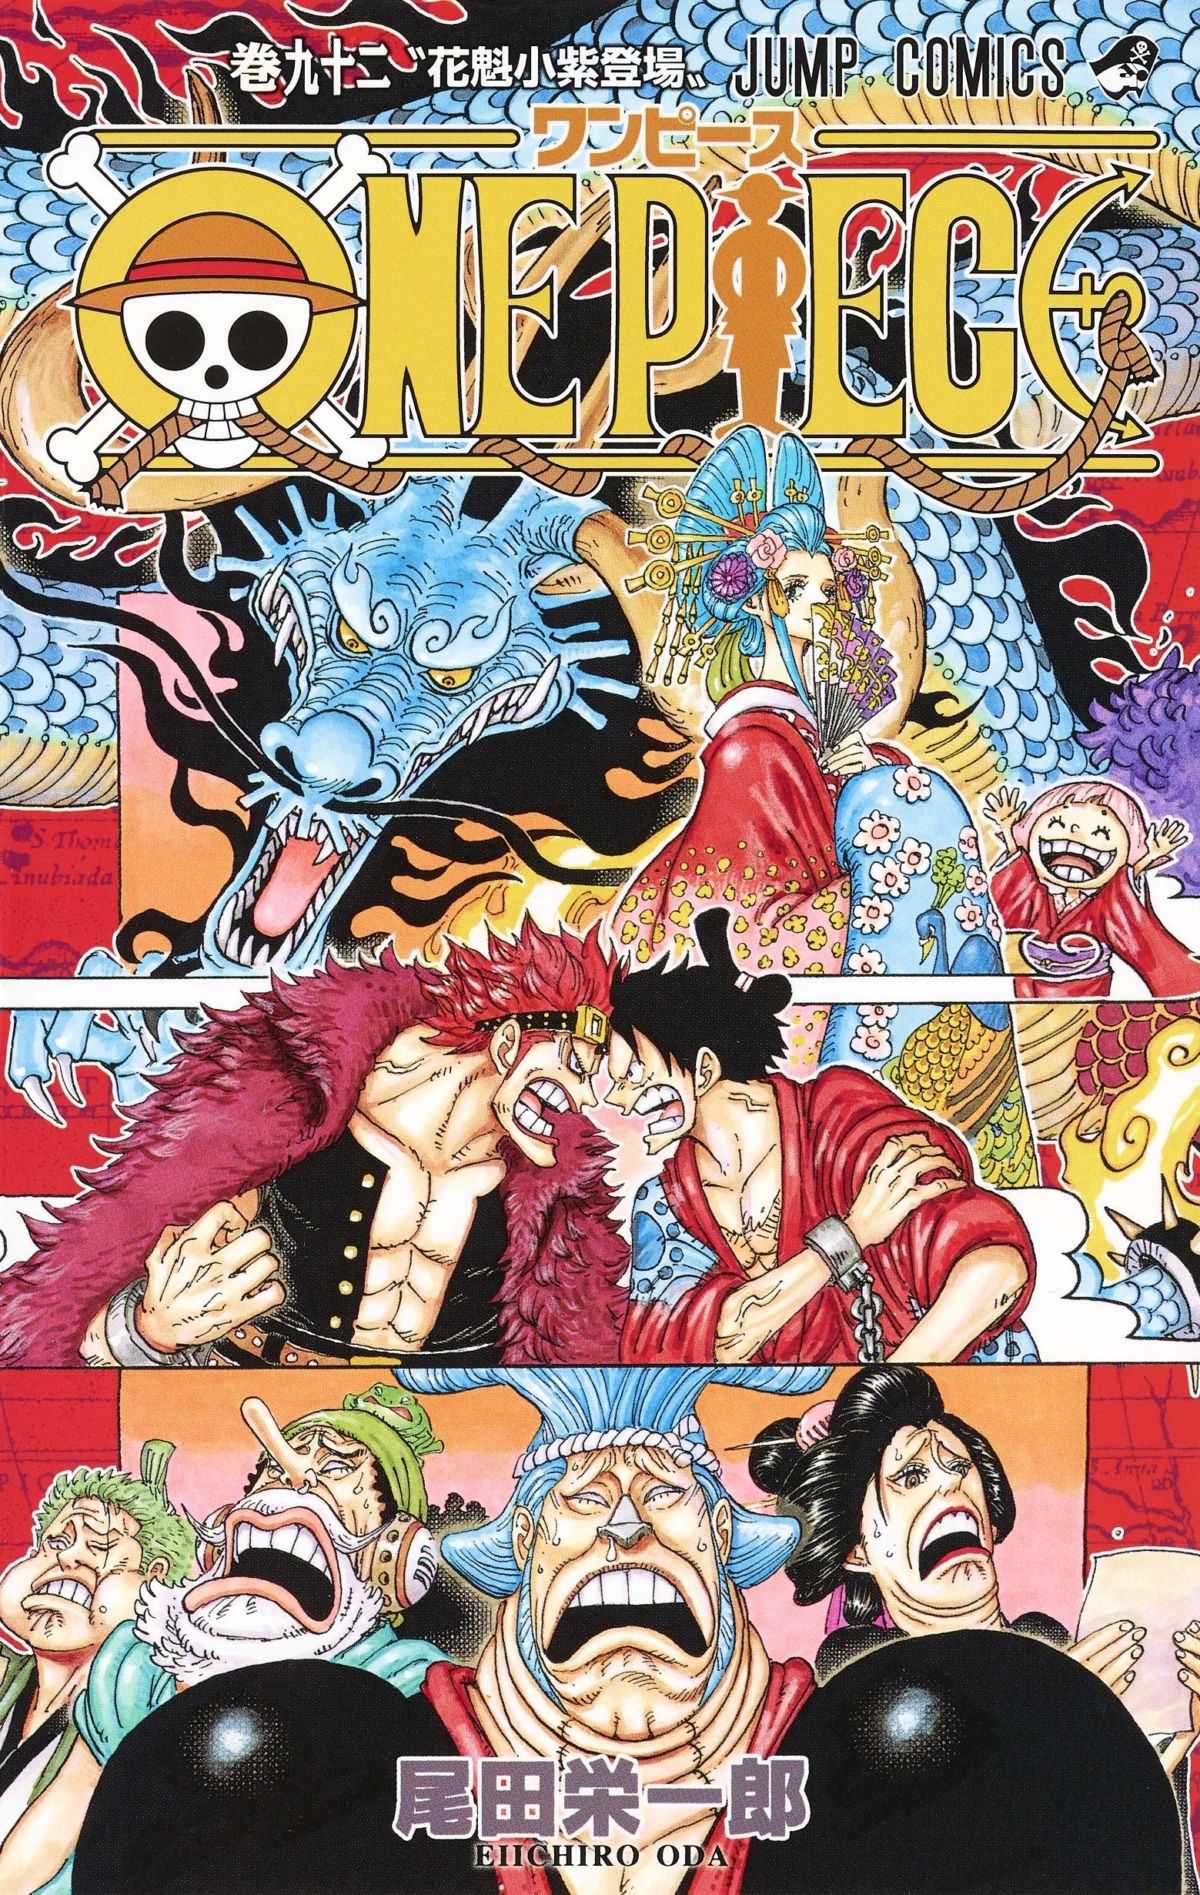 One Piece 92 ルフィが一撃で敗戦する 龍の化け物 カイドウが強すぎる 混沌する展開 強者の潰し合いが始まった ダ ヴィンチニュース